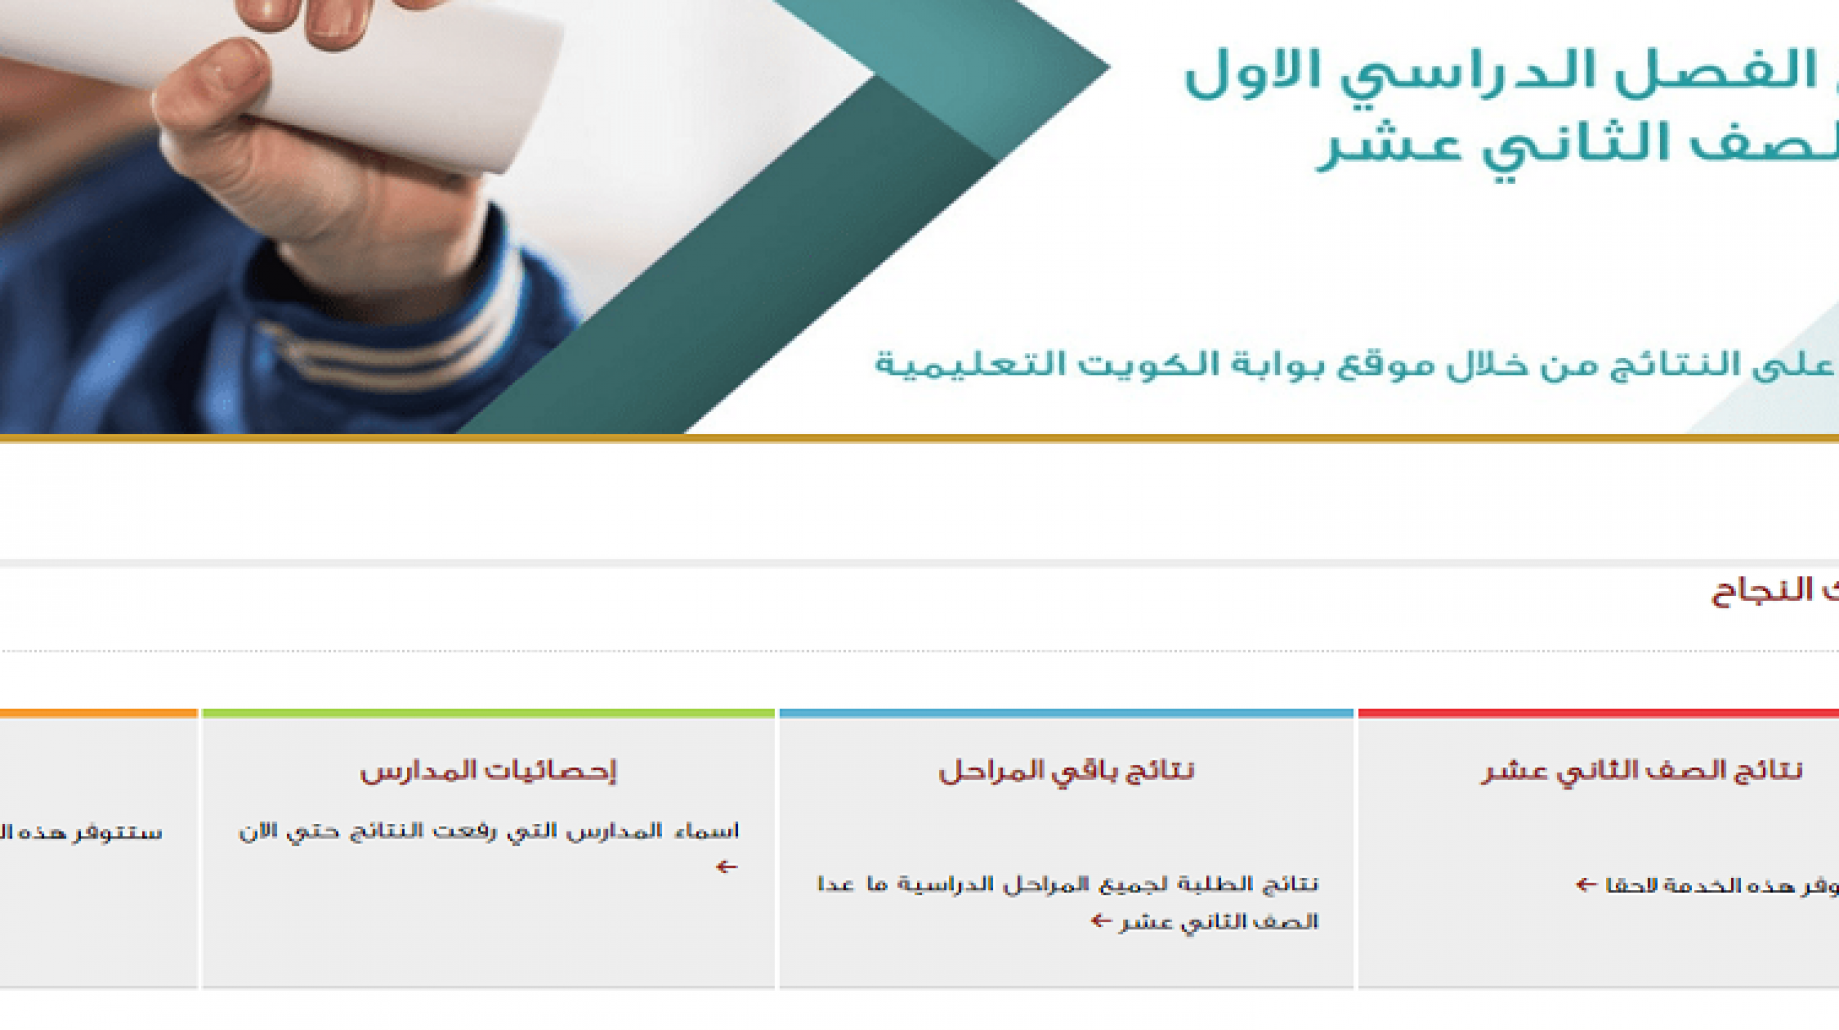 الان استعلام عن الثاني عشر 2021/2022 الكويت من خلال موقع المربع الالكتروني وزارة التربية والتعليم الكويتية